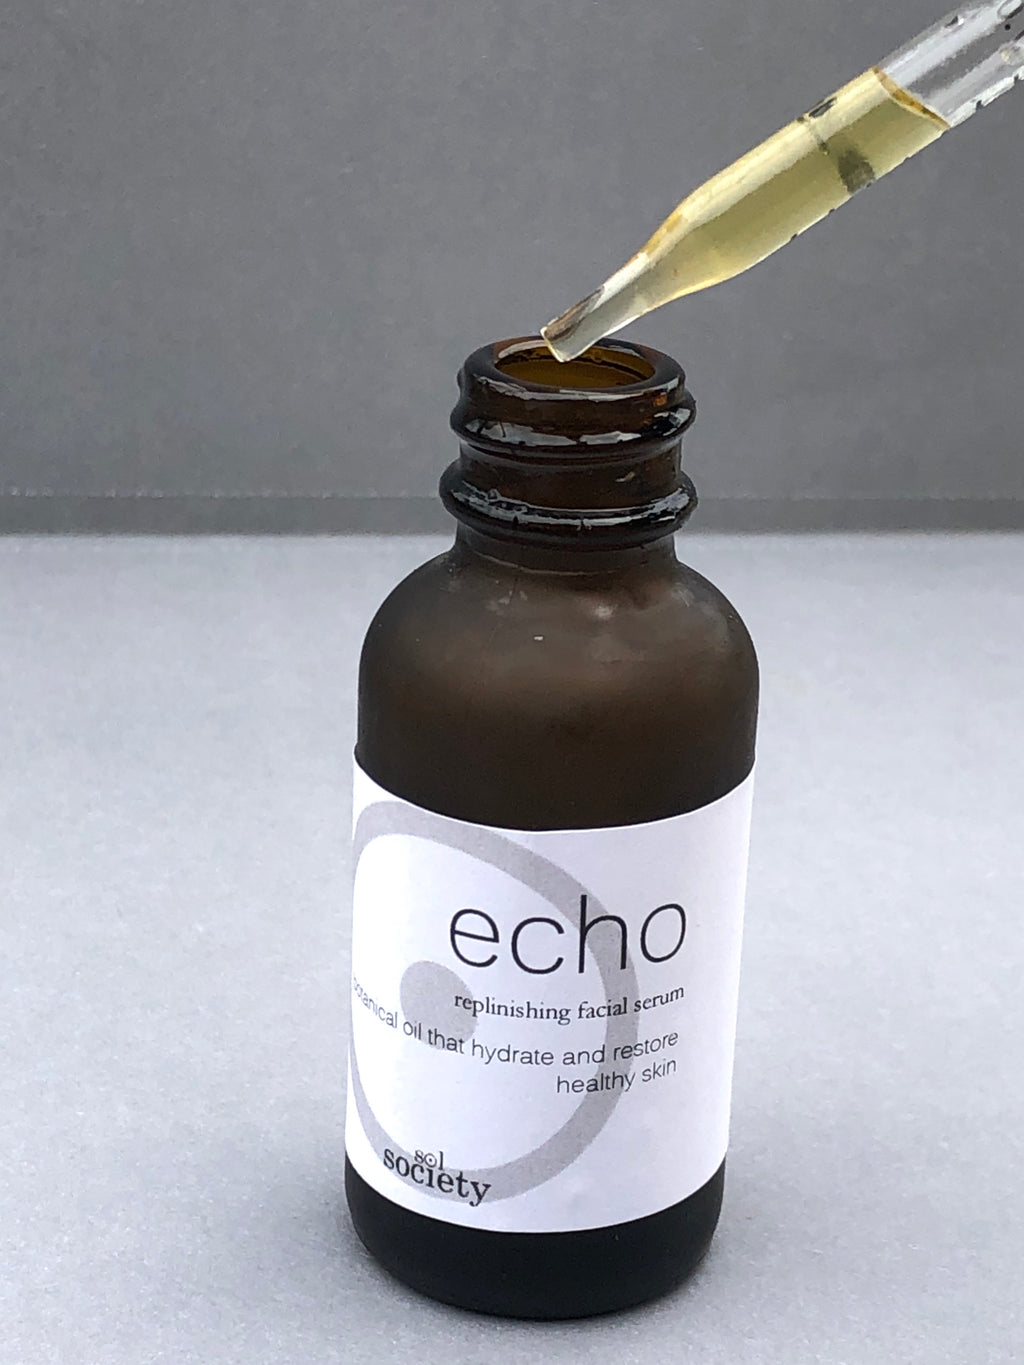 echo - replenishing facial serum